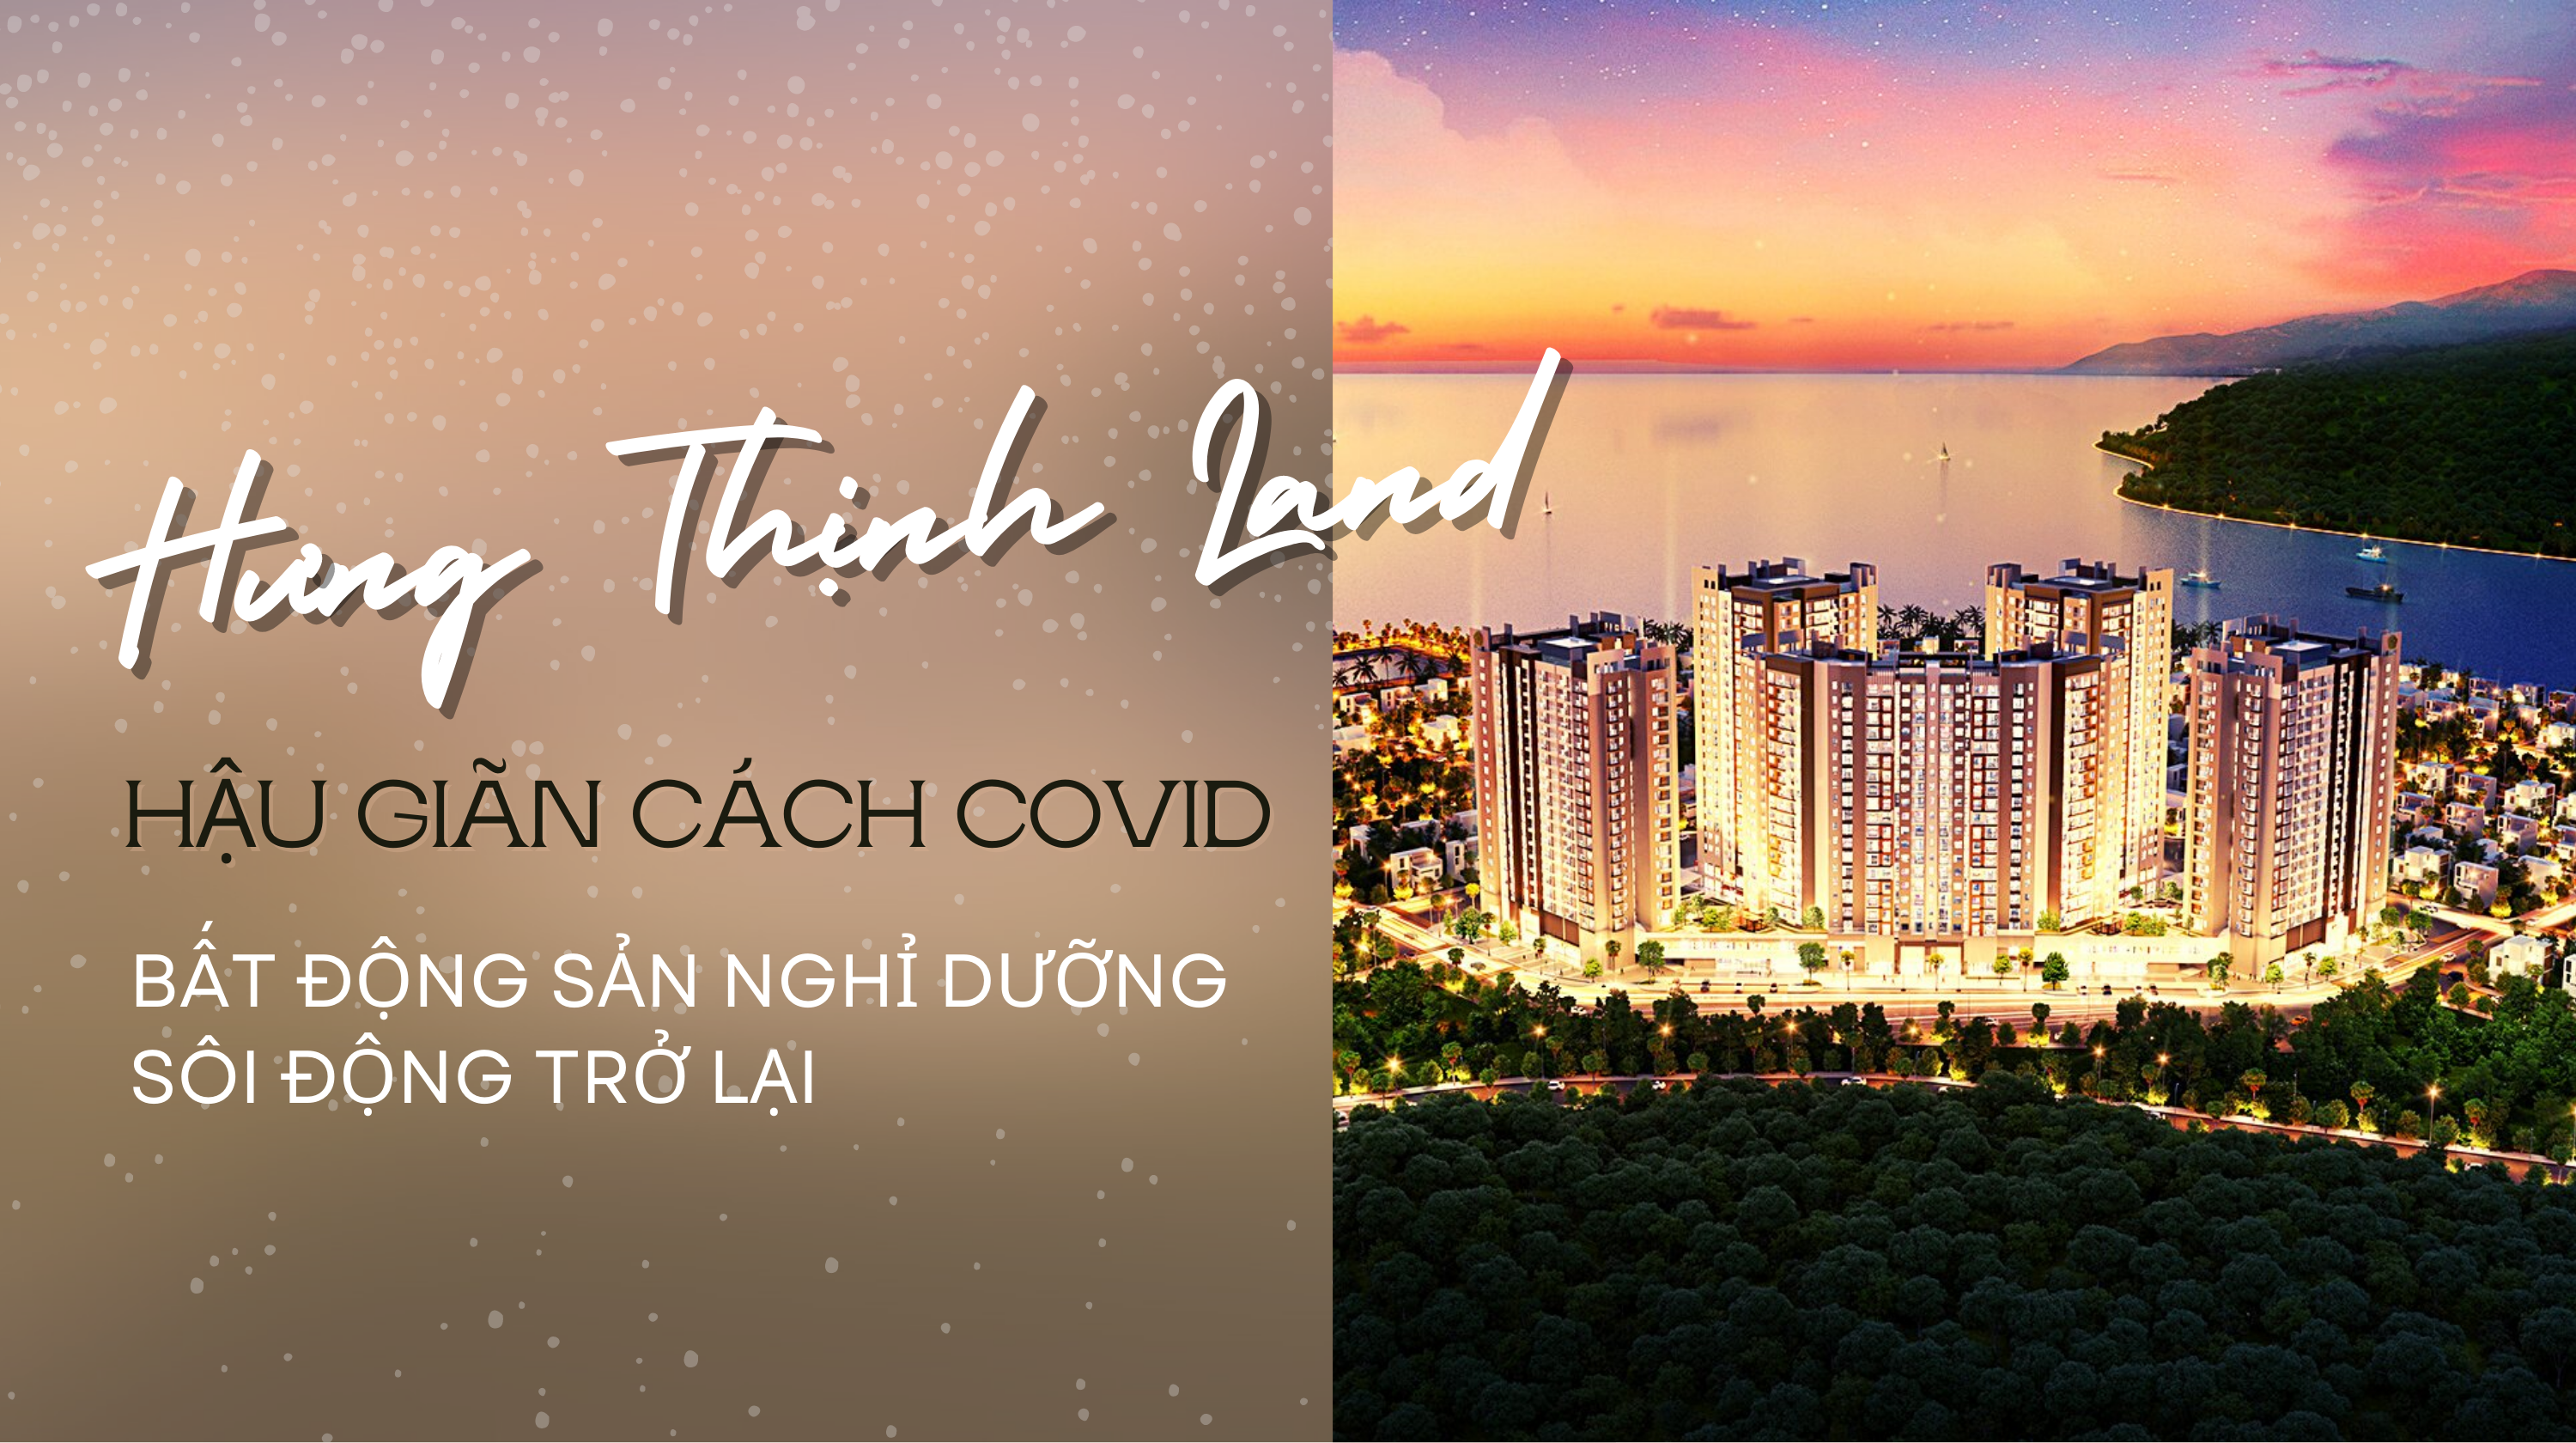 Hậu giãn cách COVID: Bất động sản nghỉ dưỡng sôi động trở lại, căn hộ biển Nha Trang tăng nhiệt